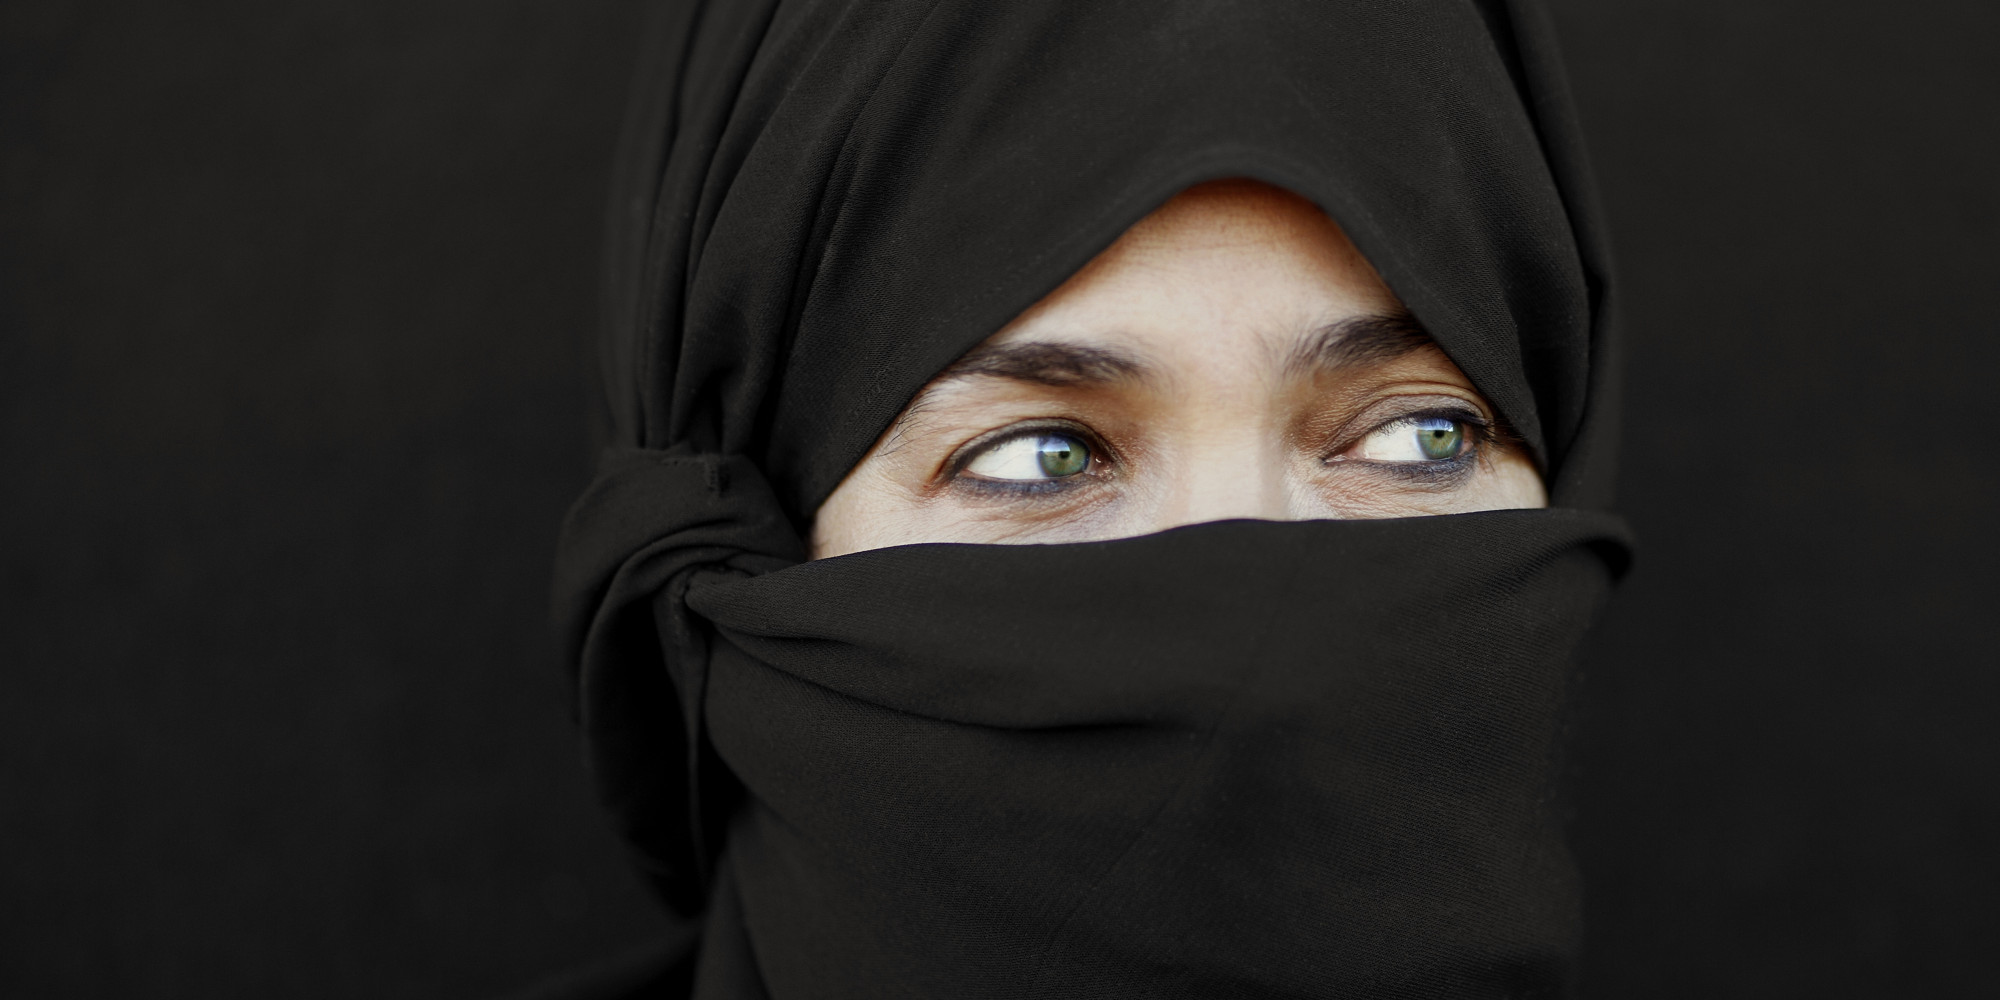 quebec-muslim-women-scared-to-walk-alone